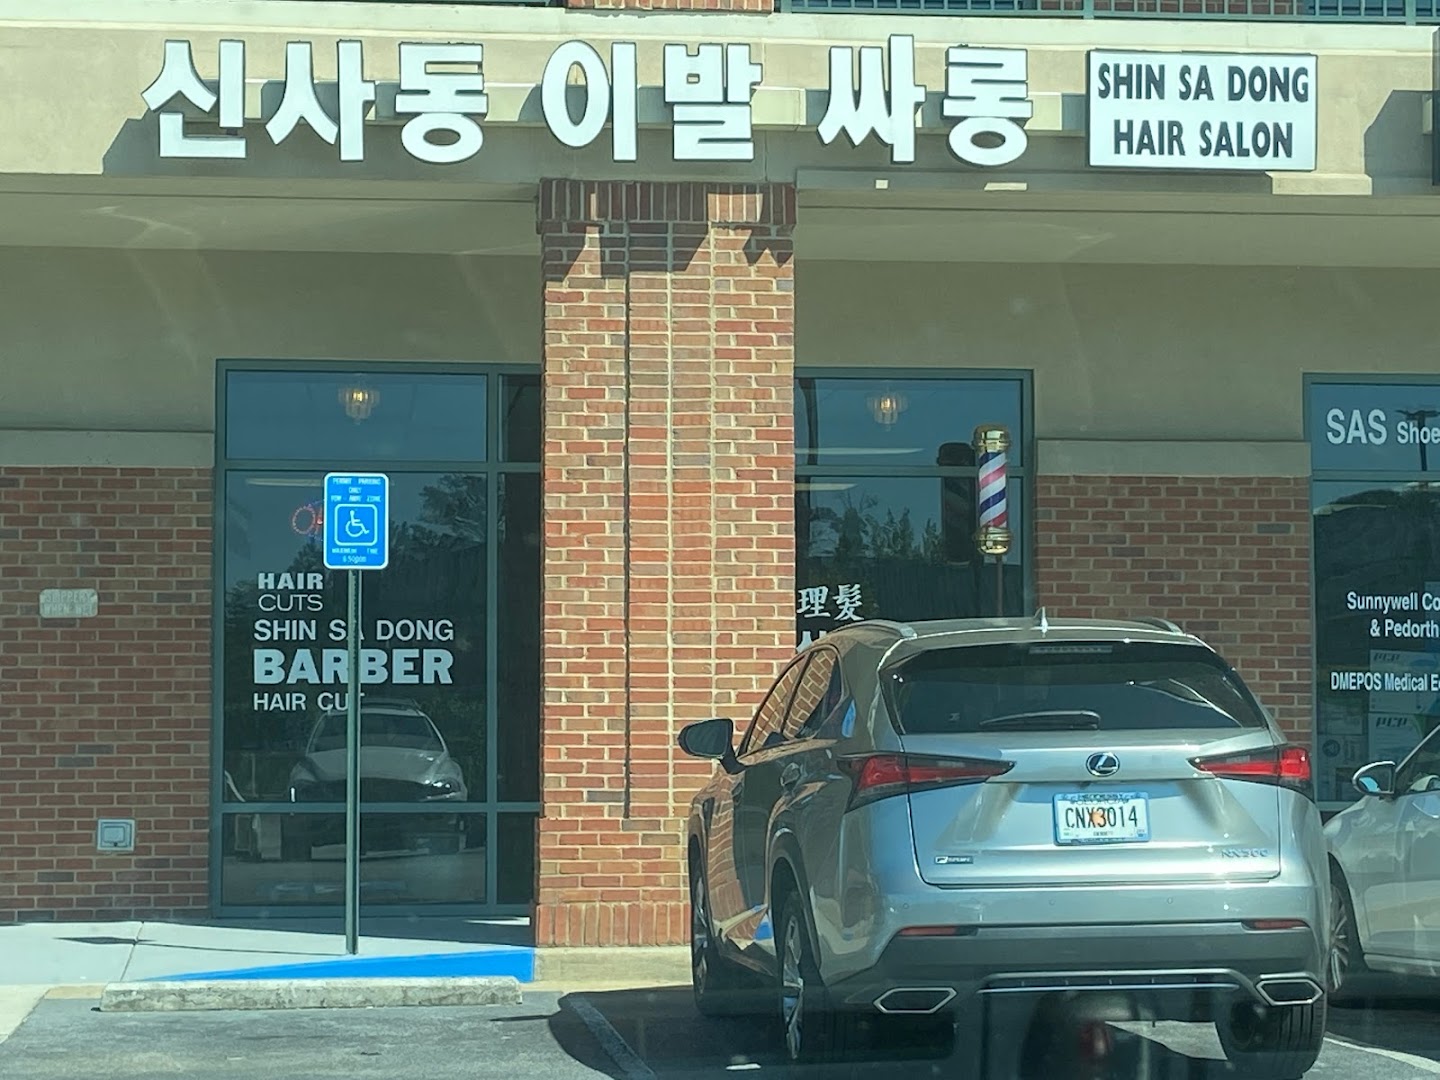 Shin Sa Dong Hair Salon